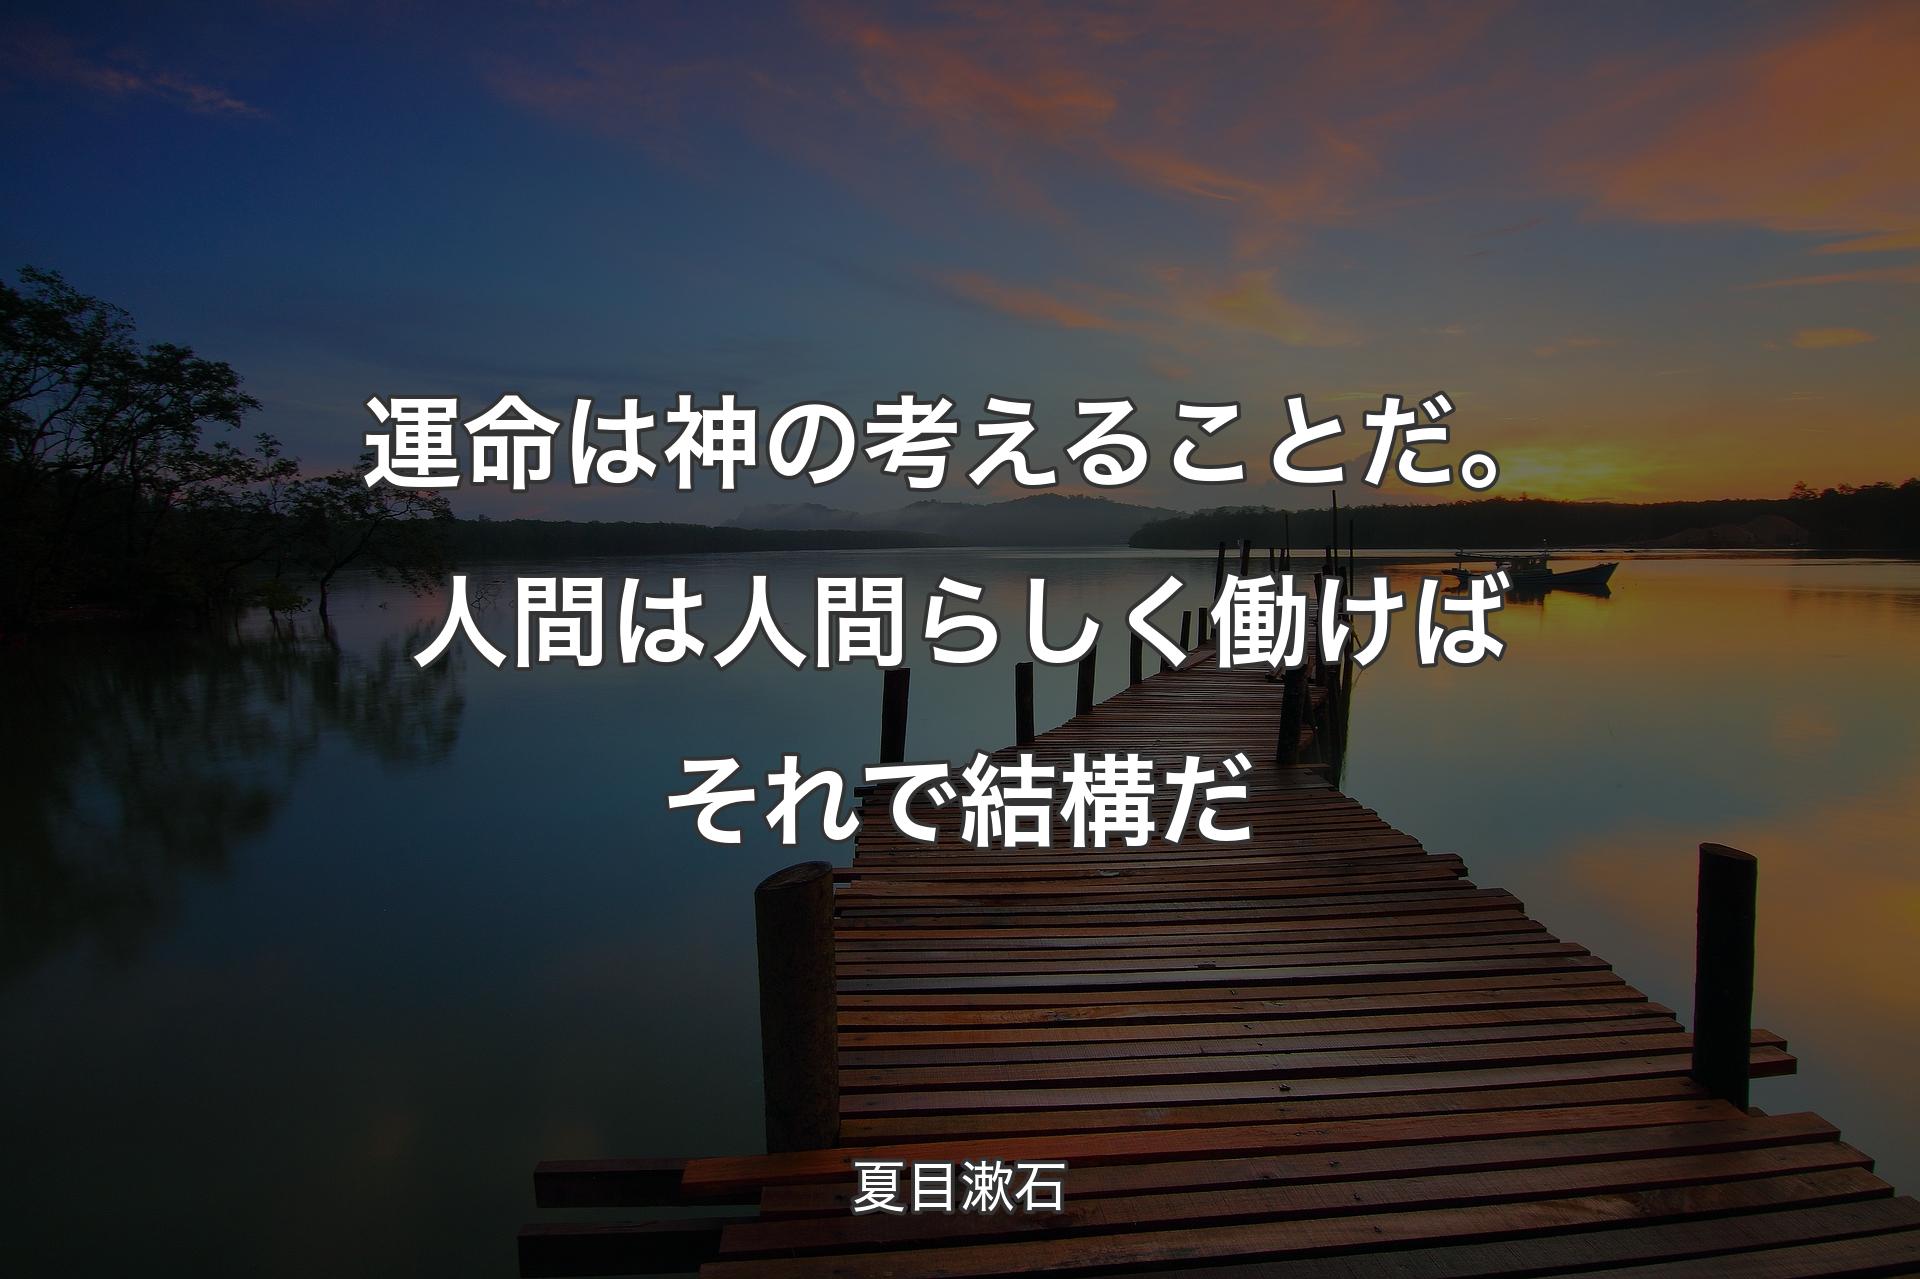 運命は神の考えることだ。 人間は人間らしく働けば それで結構だ - 夏目漱石